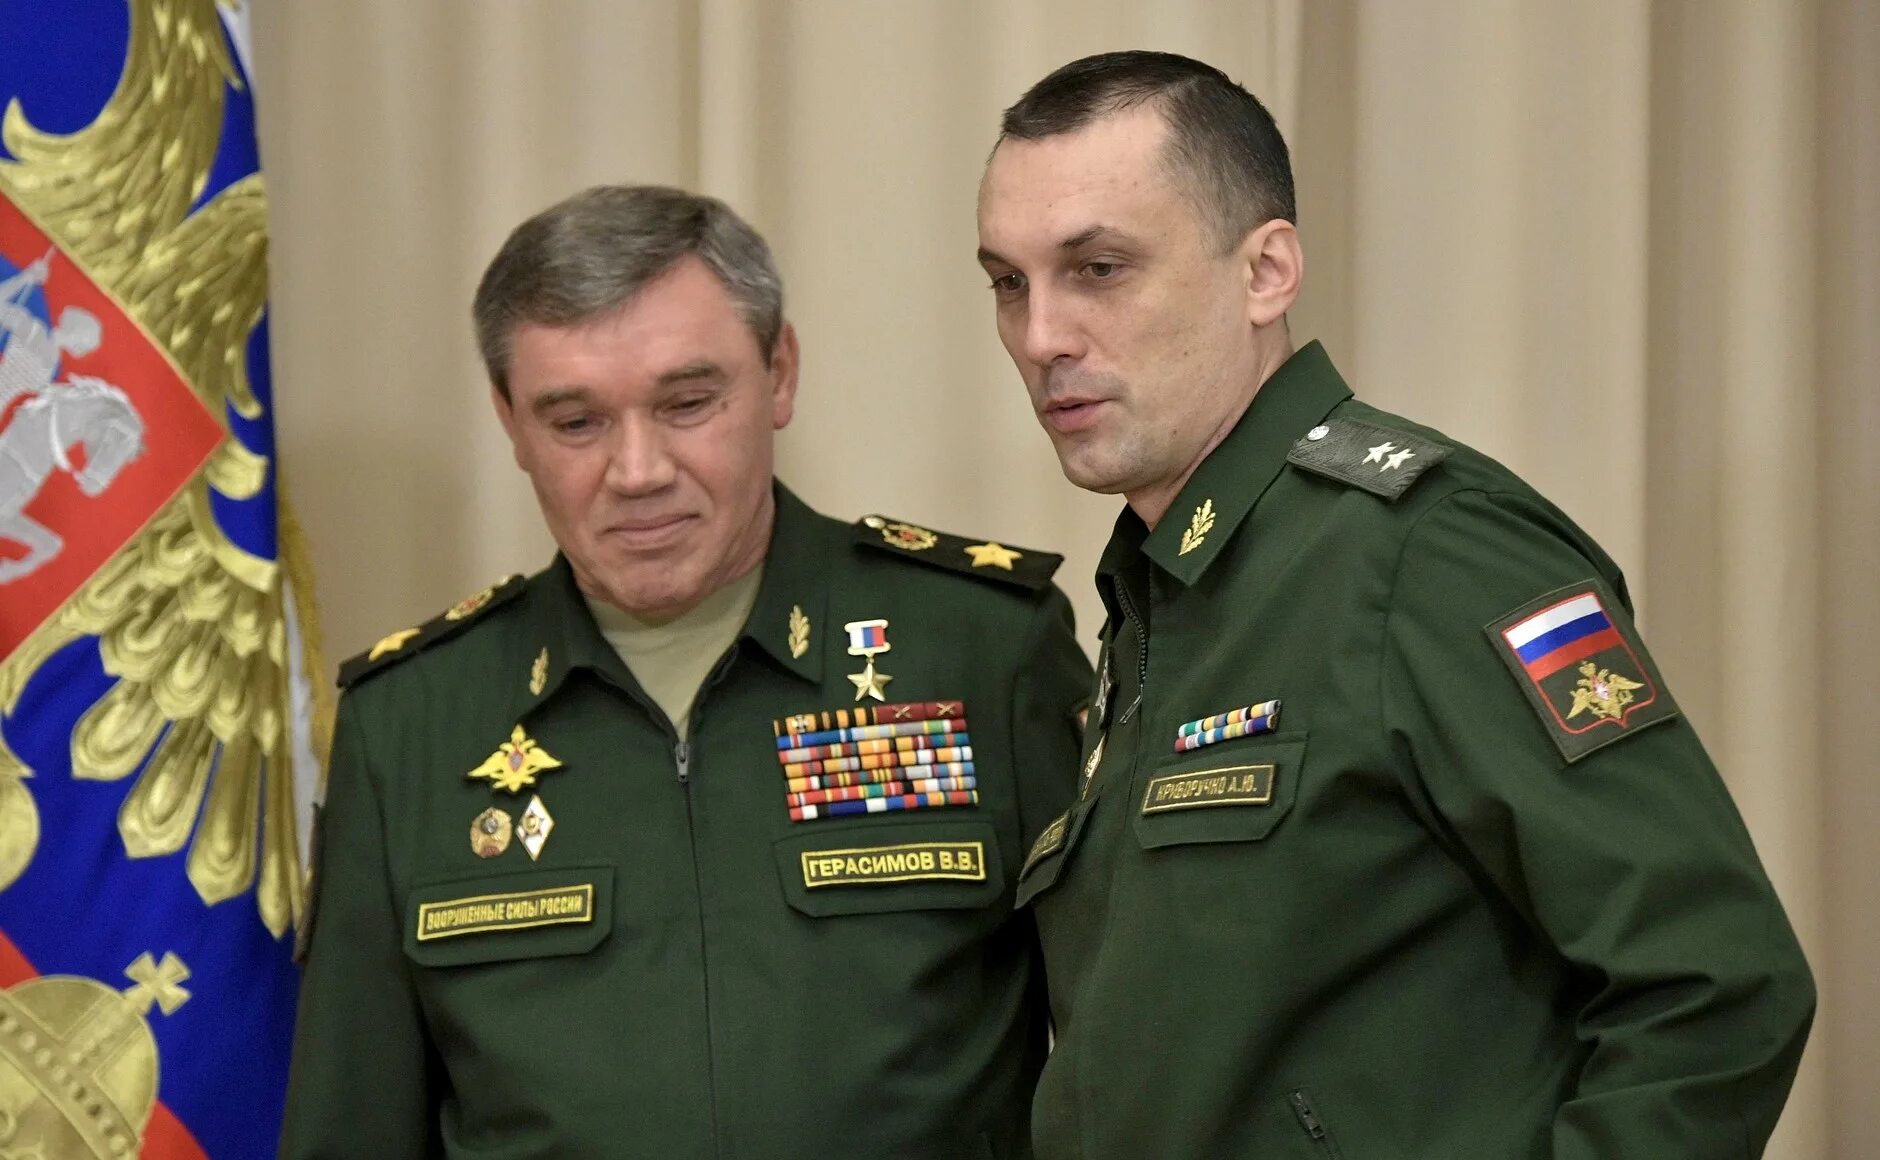 Сайт змо. Генерал Криворучко зам министра обороны. Заместитель министра обороны России Криворучко.